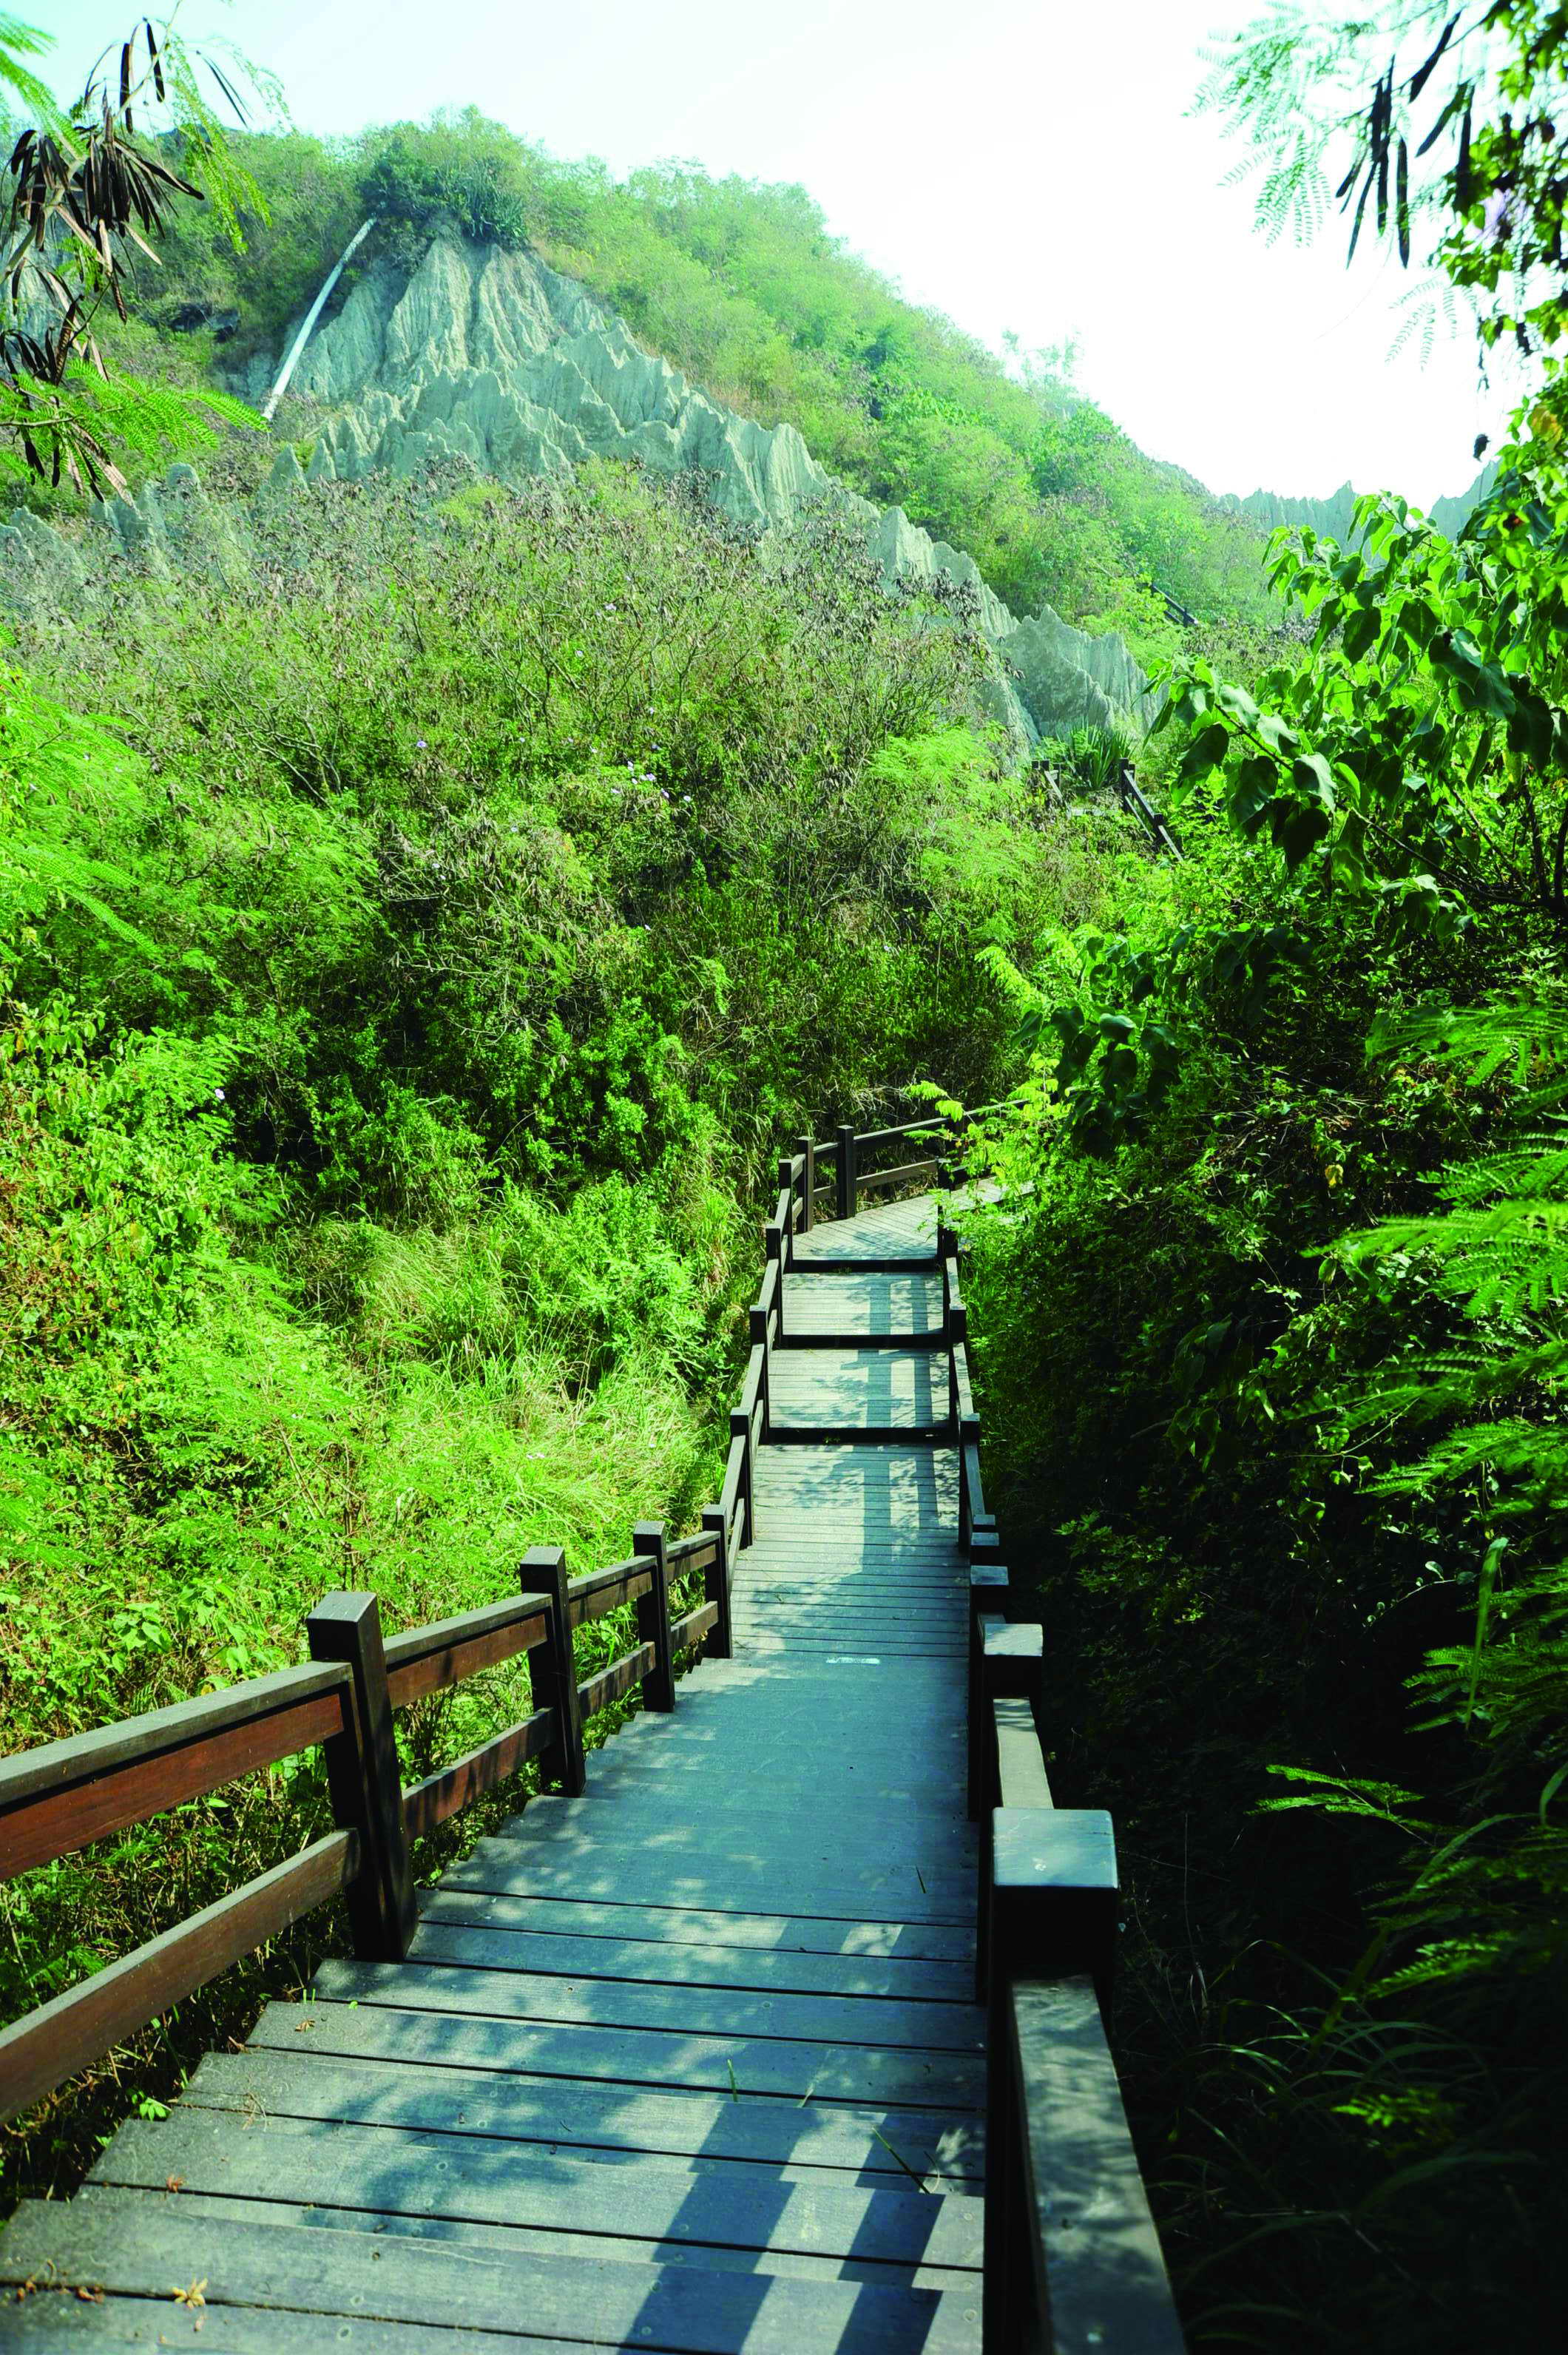 漯底山提供健行步道和許多的台灣原生種植物  Ta-di Mountain offers hiking trails and a vast range of vegetation indigenous to Taiwan.